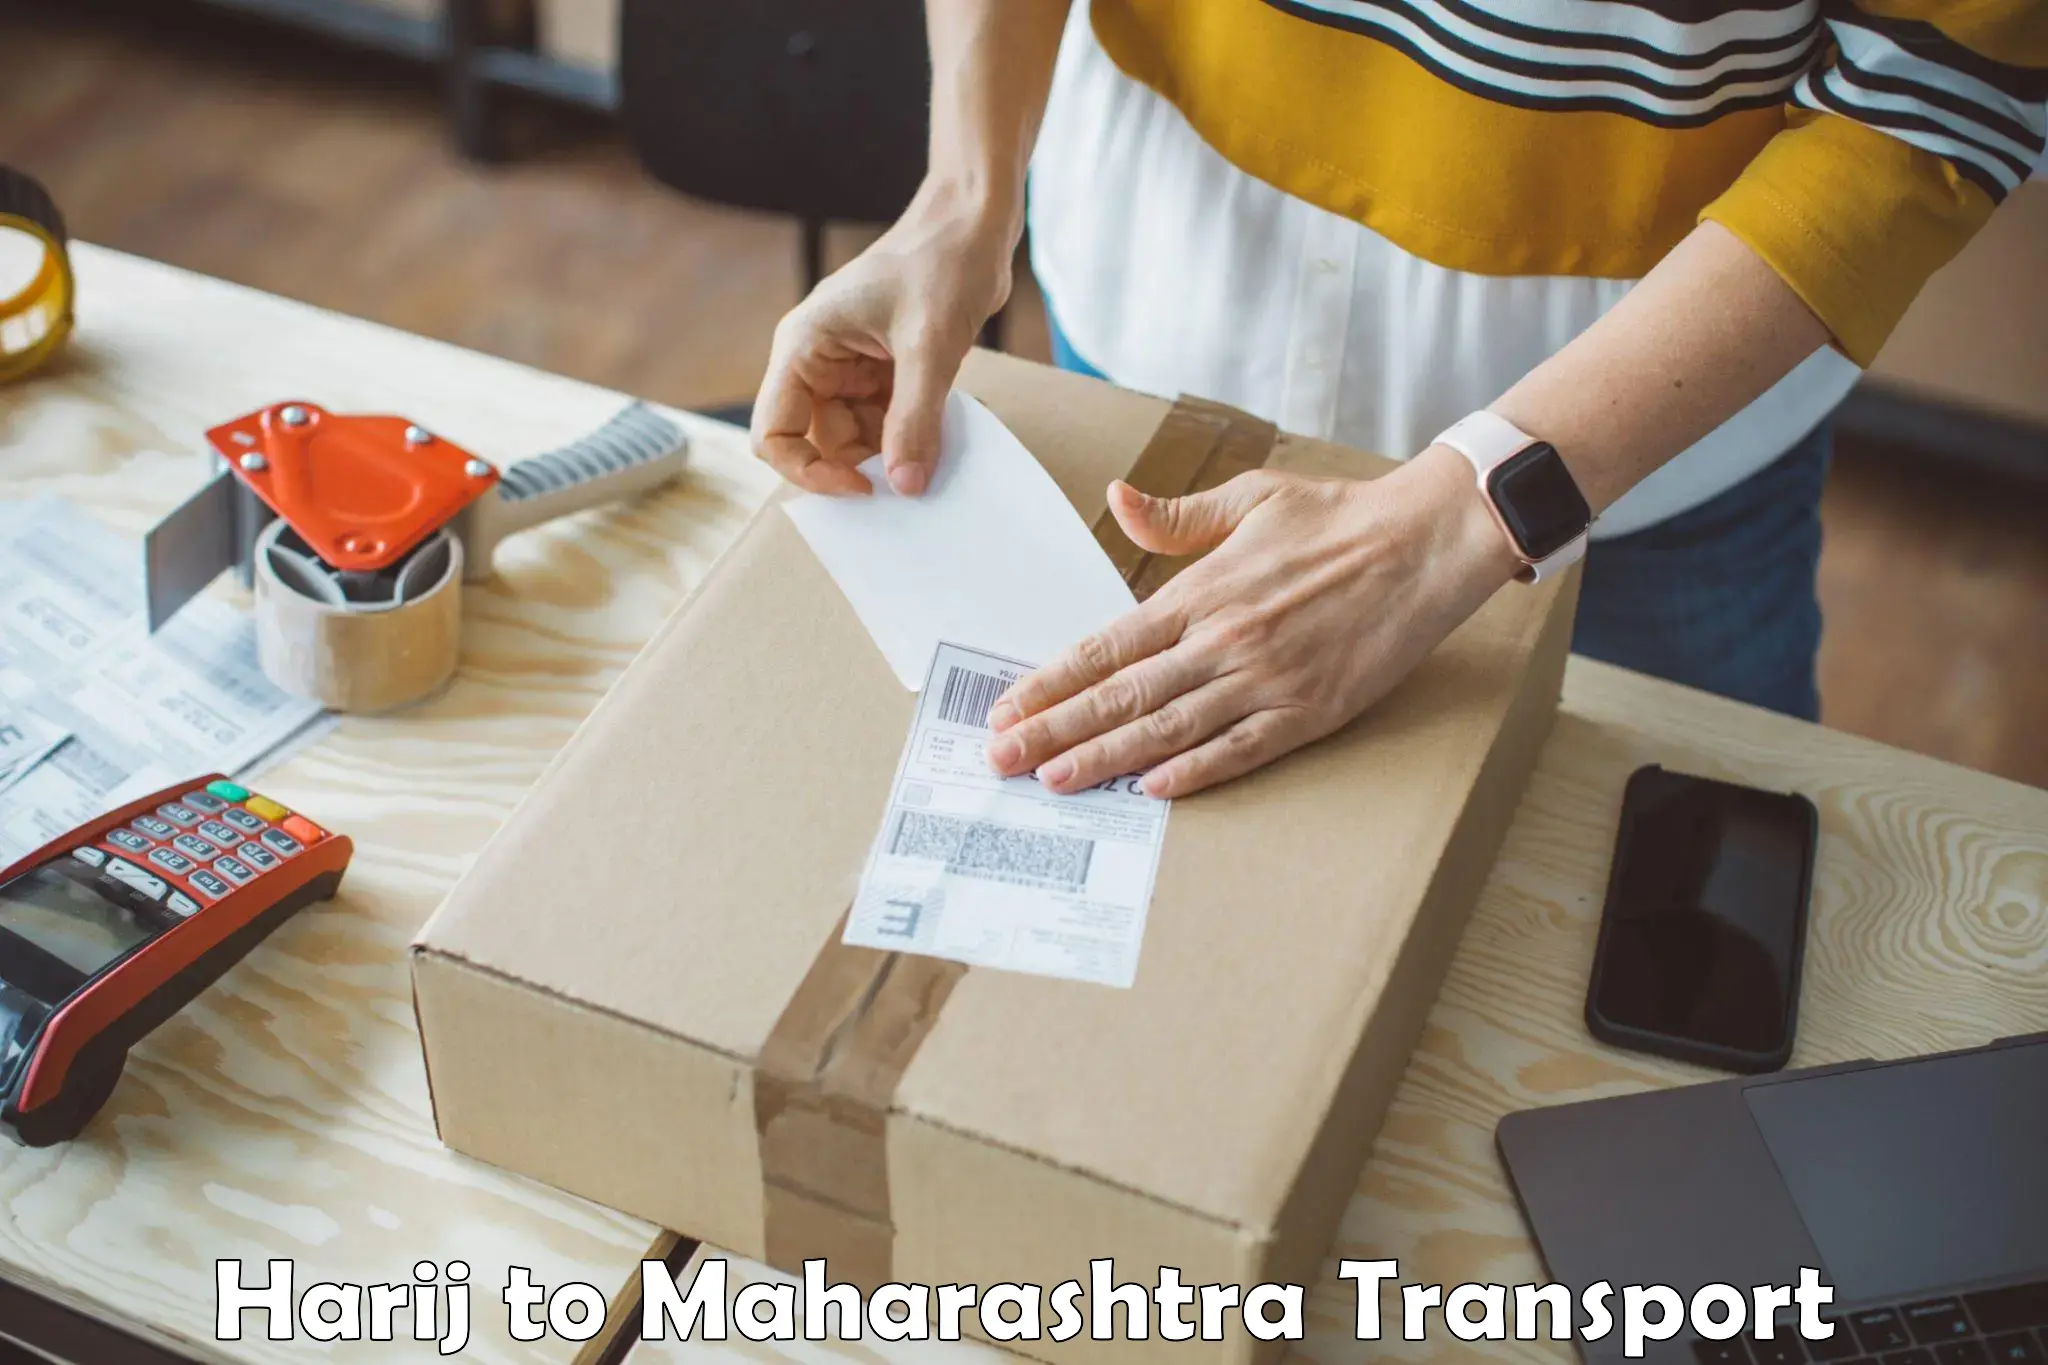 Furniture transport service Harij to Lanja